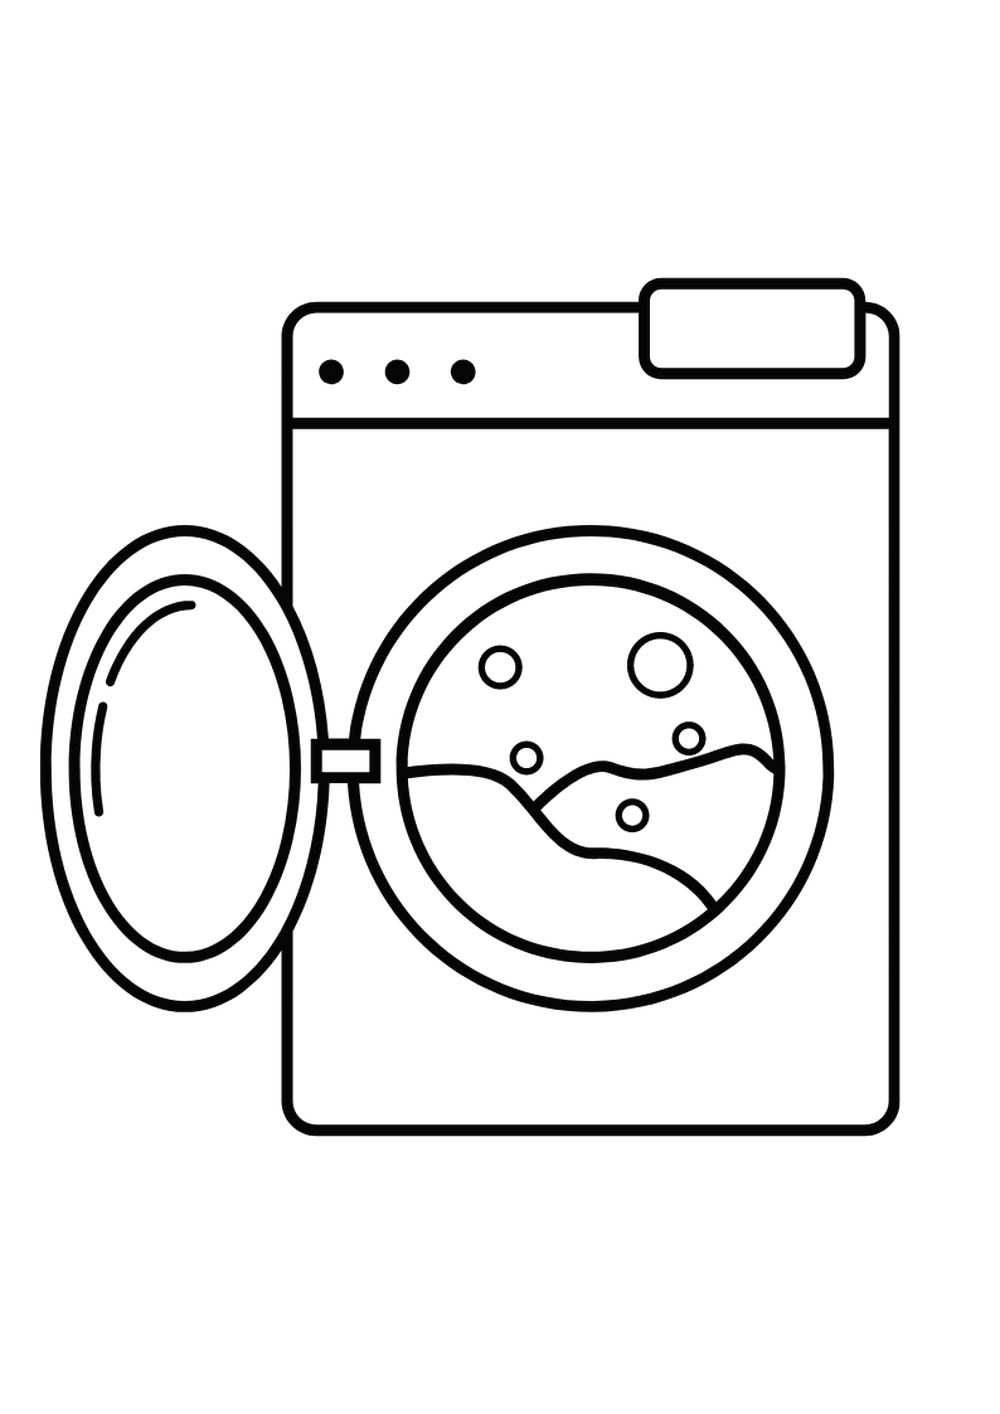 washing machine graphic